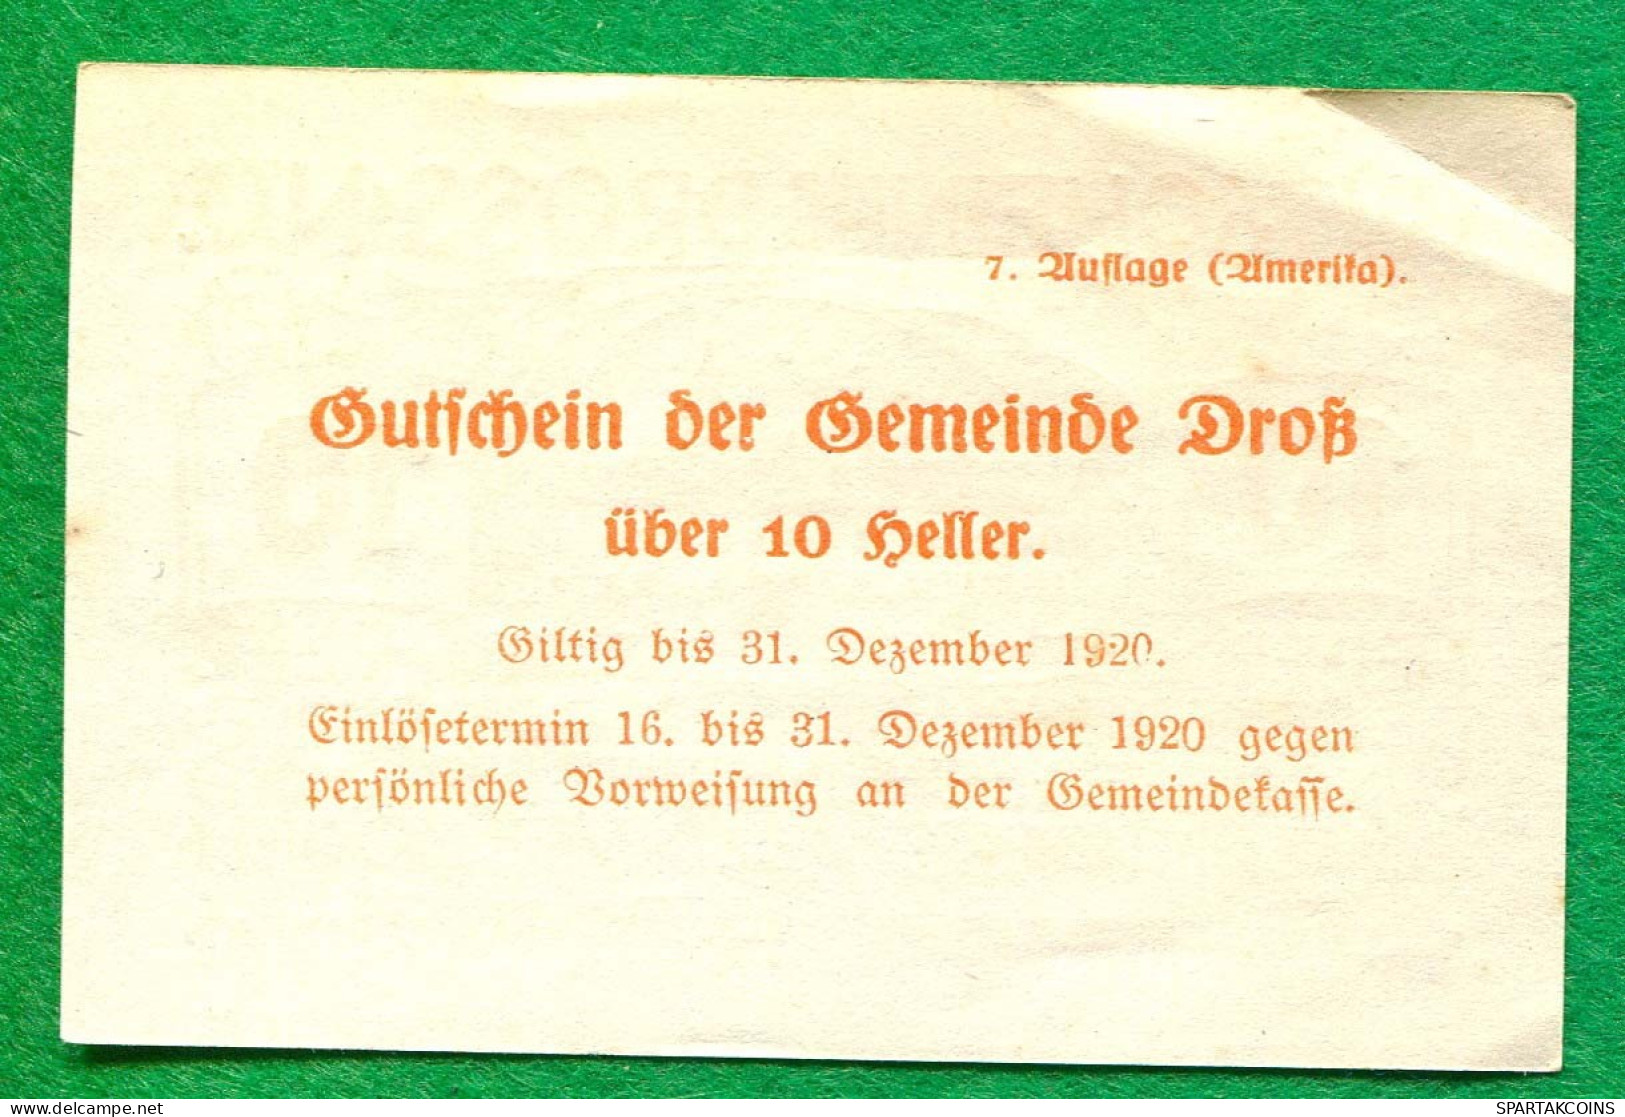 10 Heller 1920 DROSS Österreich UNC Notgeld Papiergeld Banknote #P10276 - [11] Local Banknote Issues